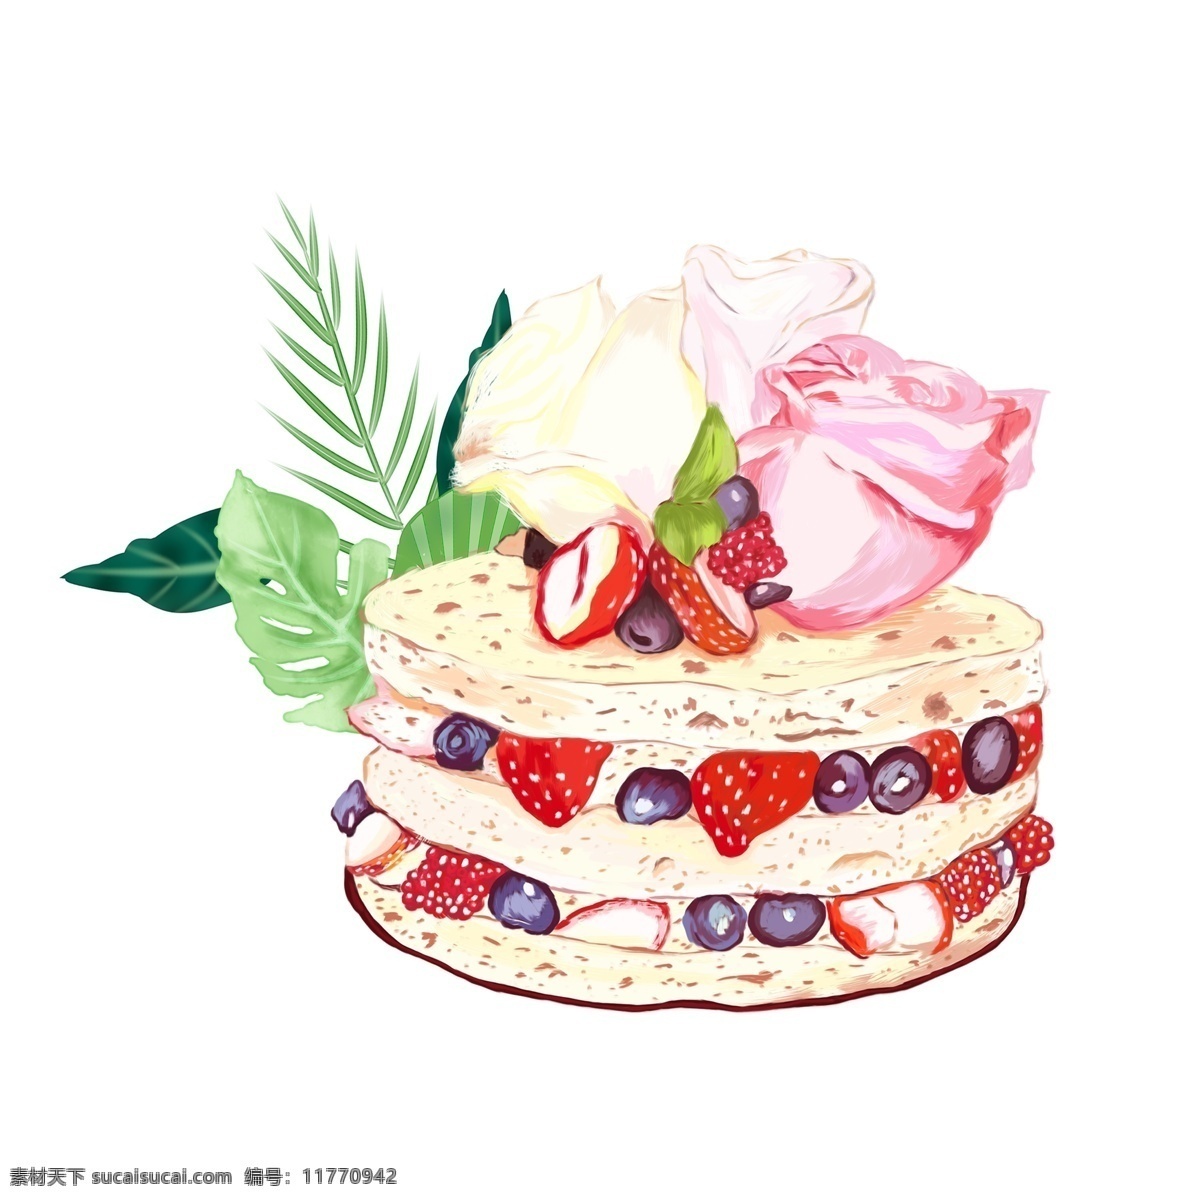 美味 水果 蛋糕 图案 元素 水果蛋糕 生日蛋糕 蛋糕图案 花朵 绿叶 美味蛋糕 蛋糕元素 手绘图案 元素装饰 元素设计 手绘元素 生物静物